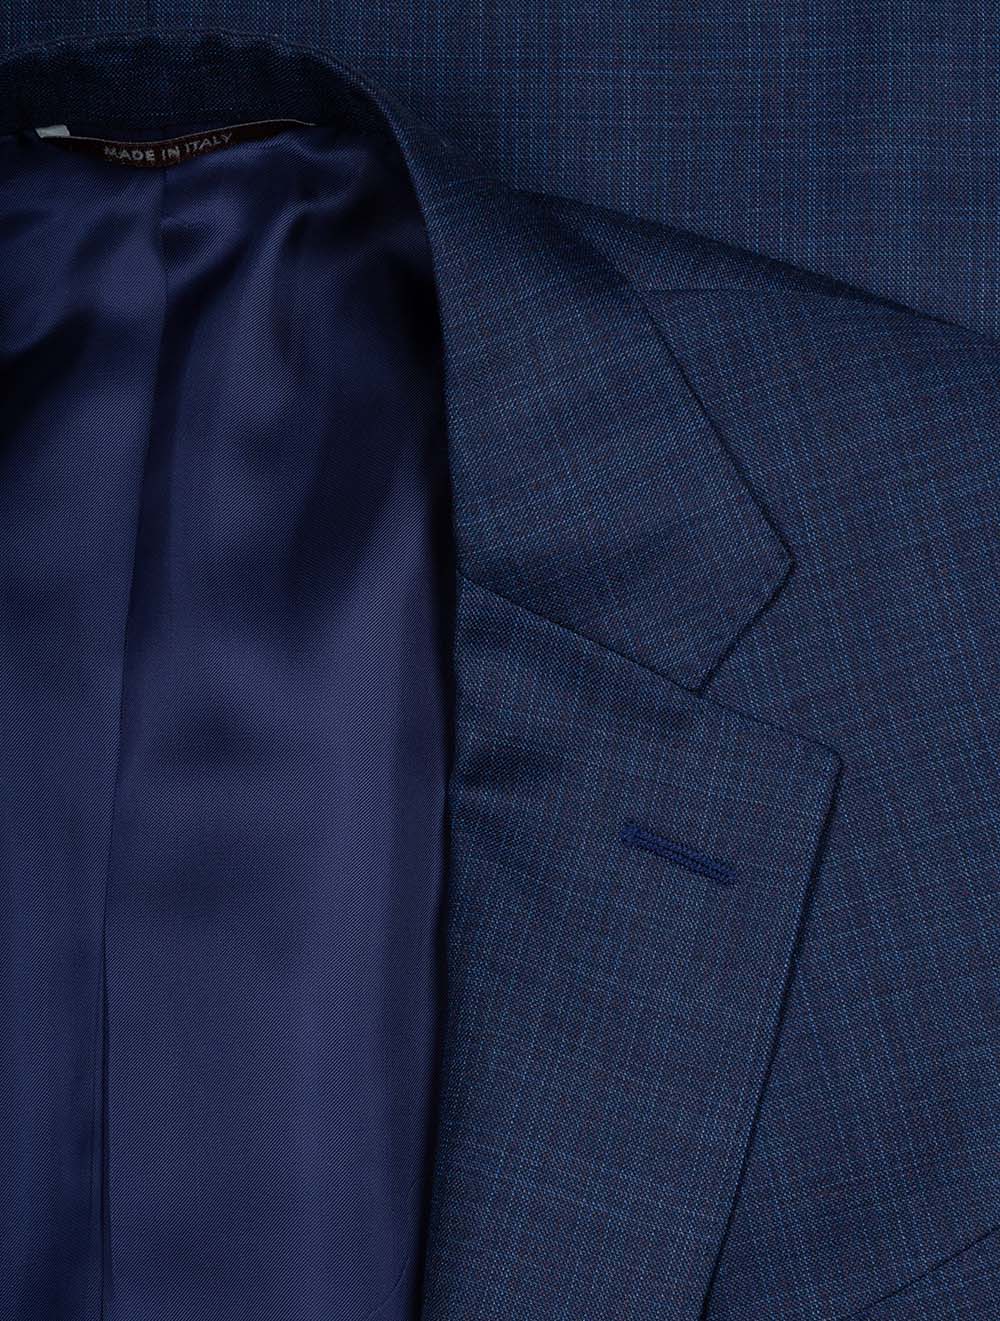 Faint Check Suit Blue